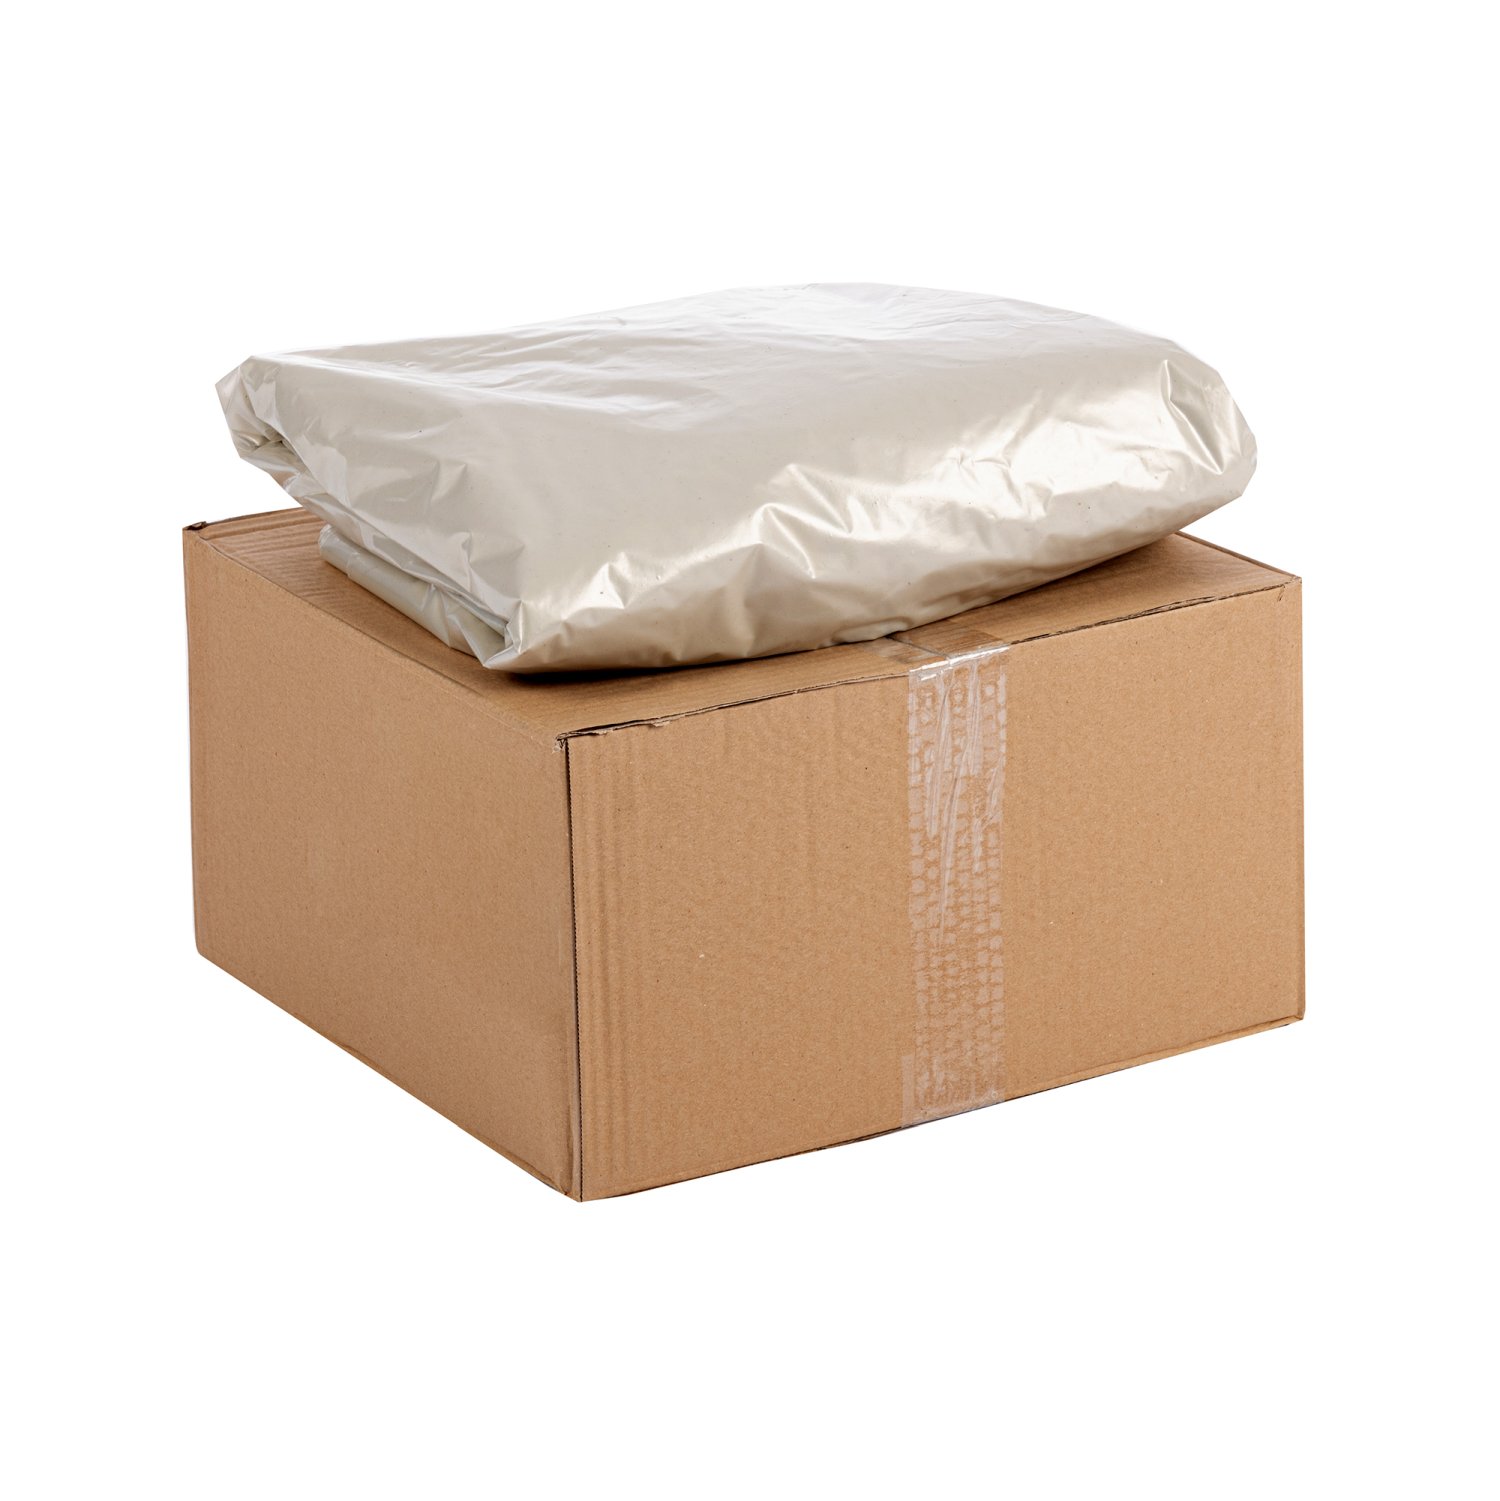 KN67-50-R Palletbox zakken Palletboxzakken bestellen
Heeft jouw palletbox een beschermende binnenbekleding nodig om de inhoud te beschermen tegen vuil, vocht en stof? Knapzak biedt de perfecte oplossing: palletbox zakken. Deze zakken zijn specifiek ontworpen voor palletboxen en zorgen ervoor dat de box schoon blijft. Ideaal voor opslag, transport en/of het verzamelen van producten en goederen. Gemaakt van scheurbestendig materiaal en ruim genoeg om goed af te sluiten aan de bovenkant.

Ontdek vandaag nog de voordelen van onze palletboxzakken en maak een bewuste keuze voor efficiënte afvalinzameling!